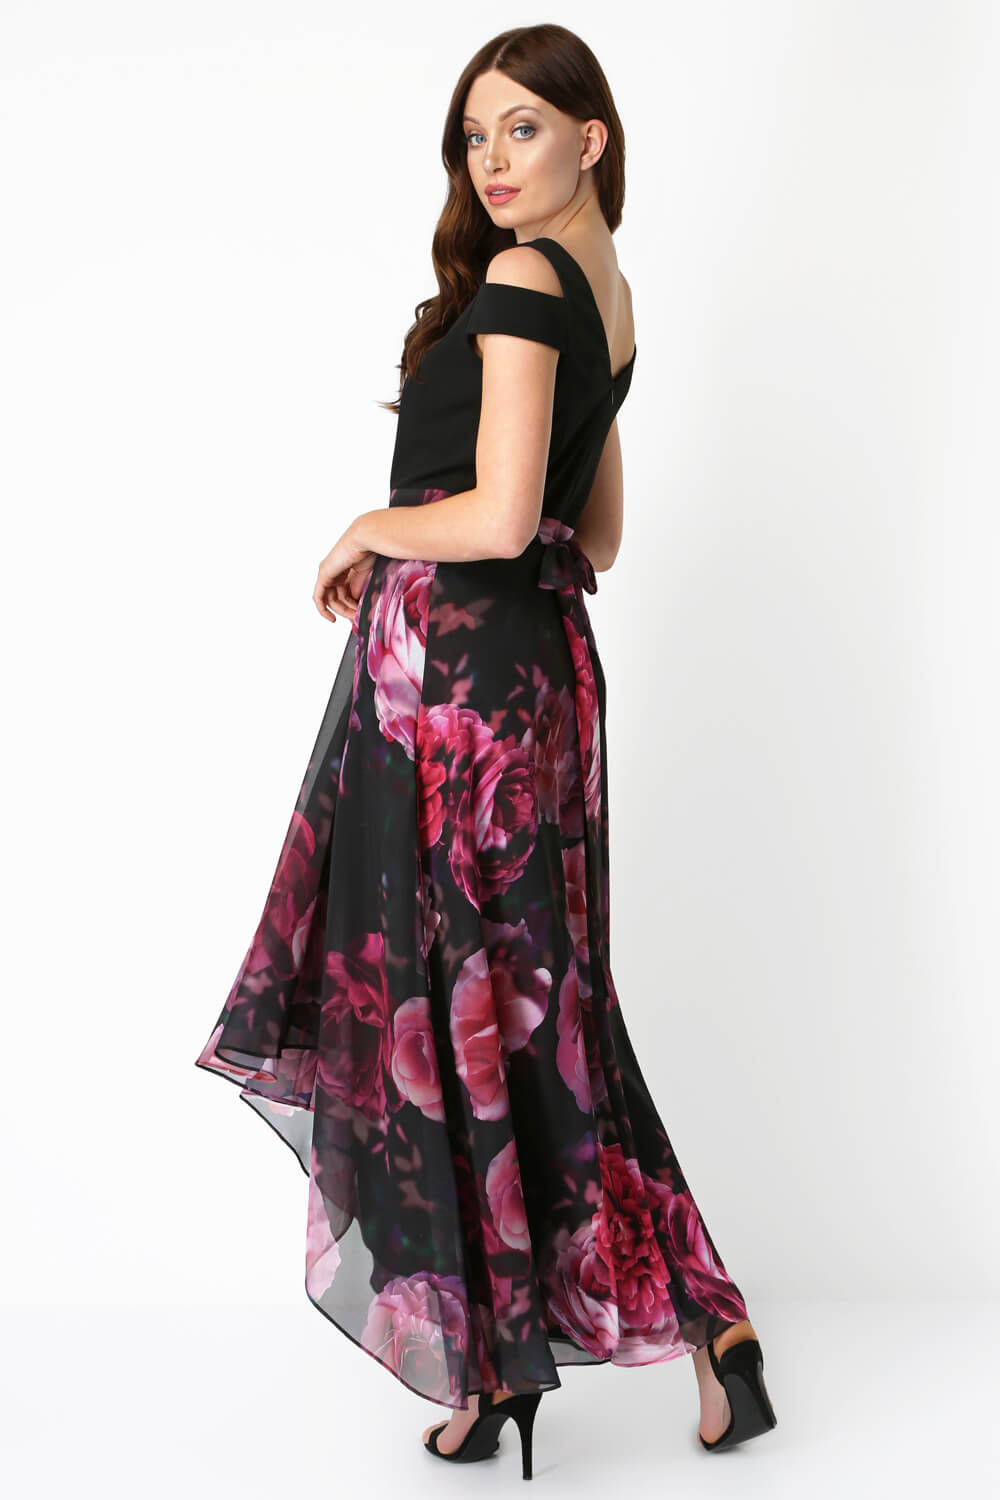 PINK Floral Print Cold Shoulder Maxi Dress, Image 3 of 5